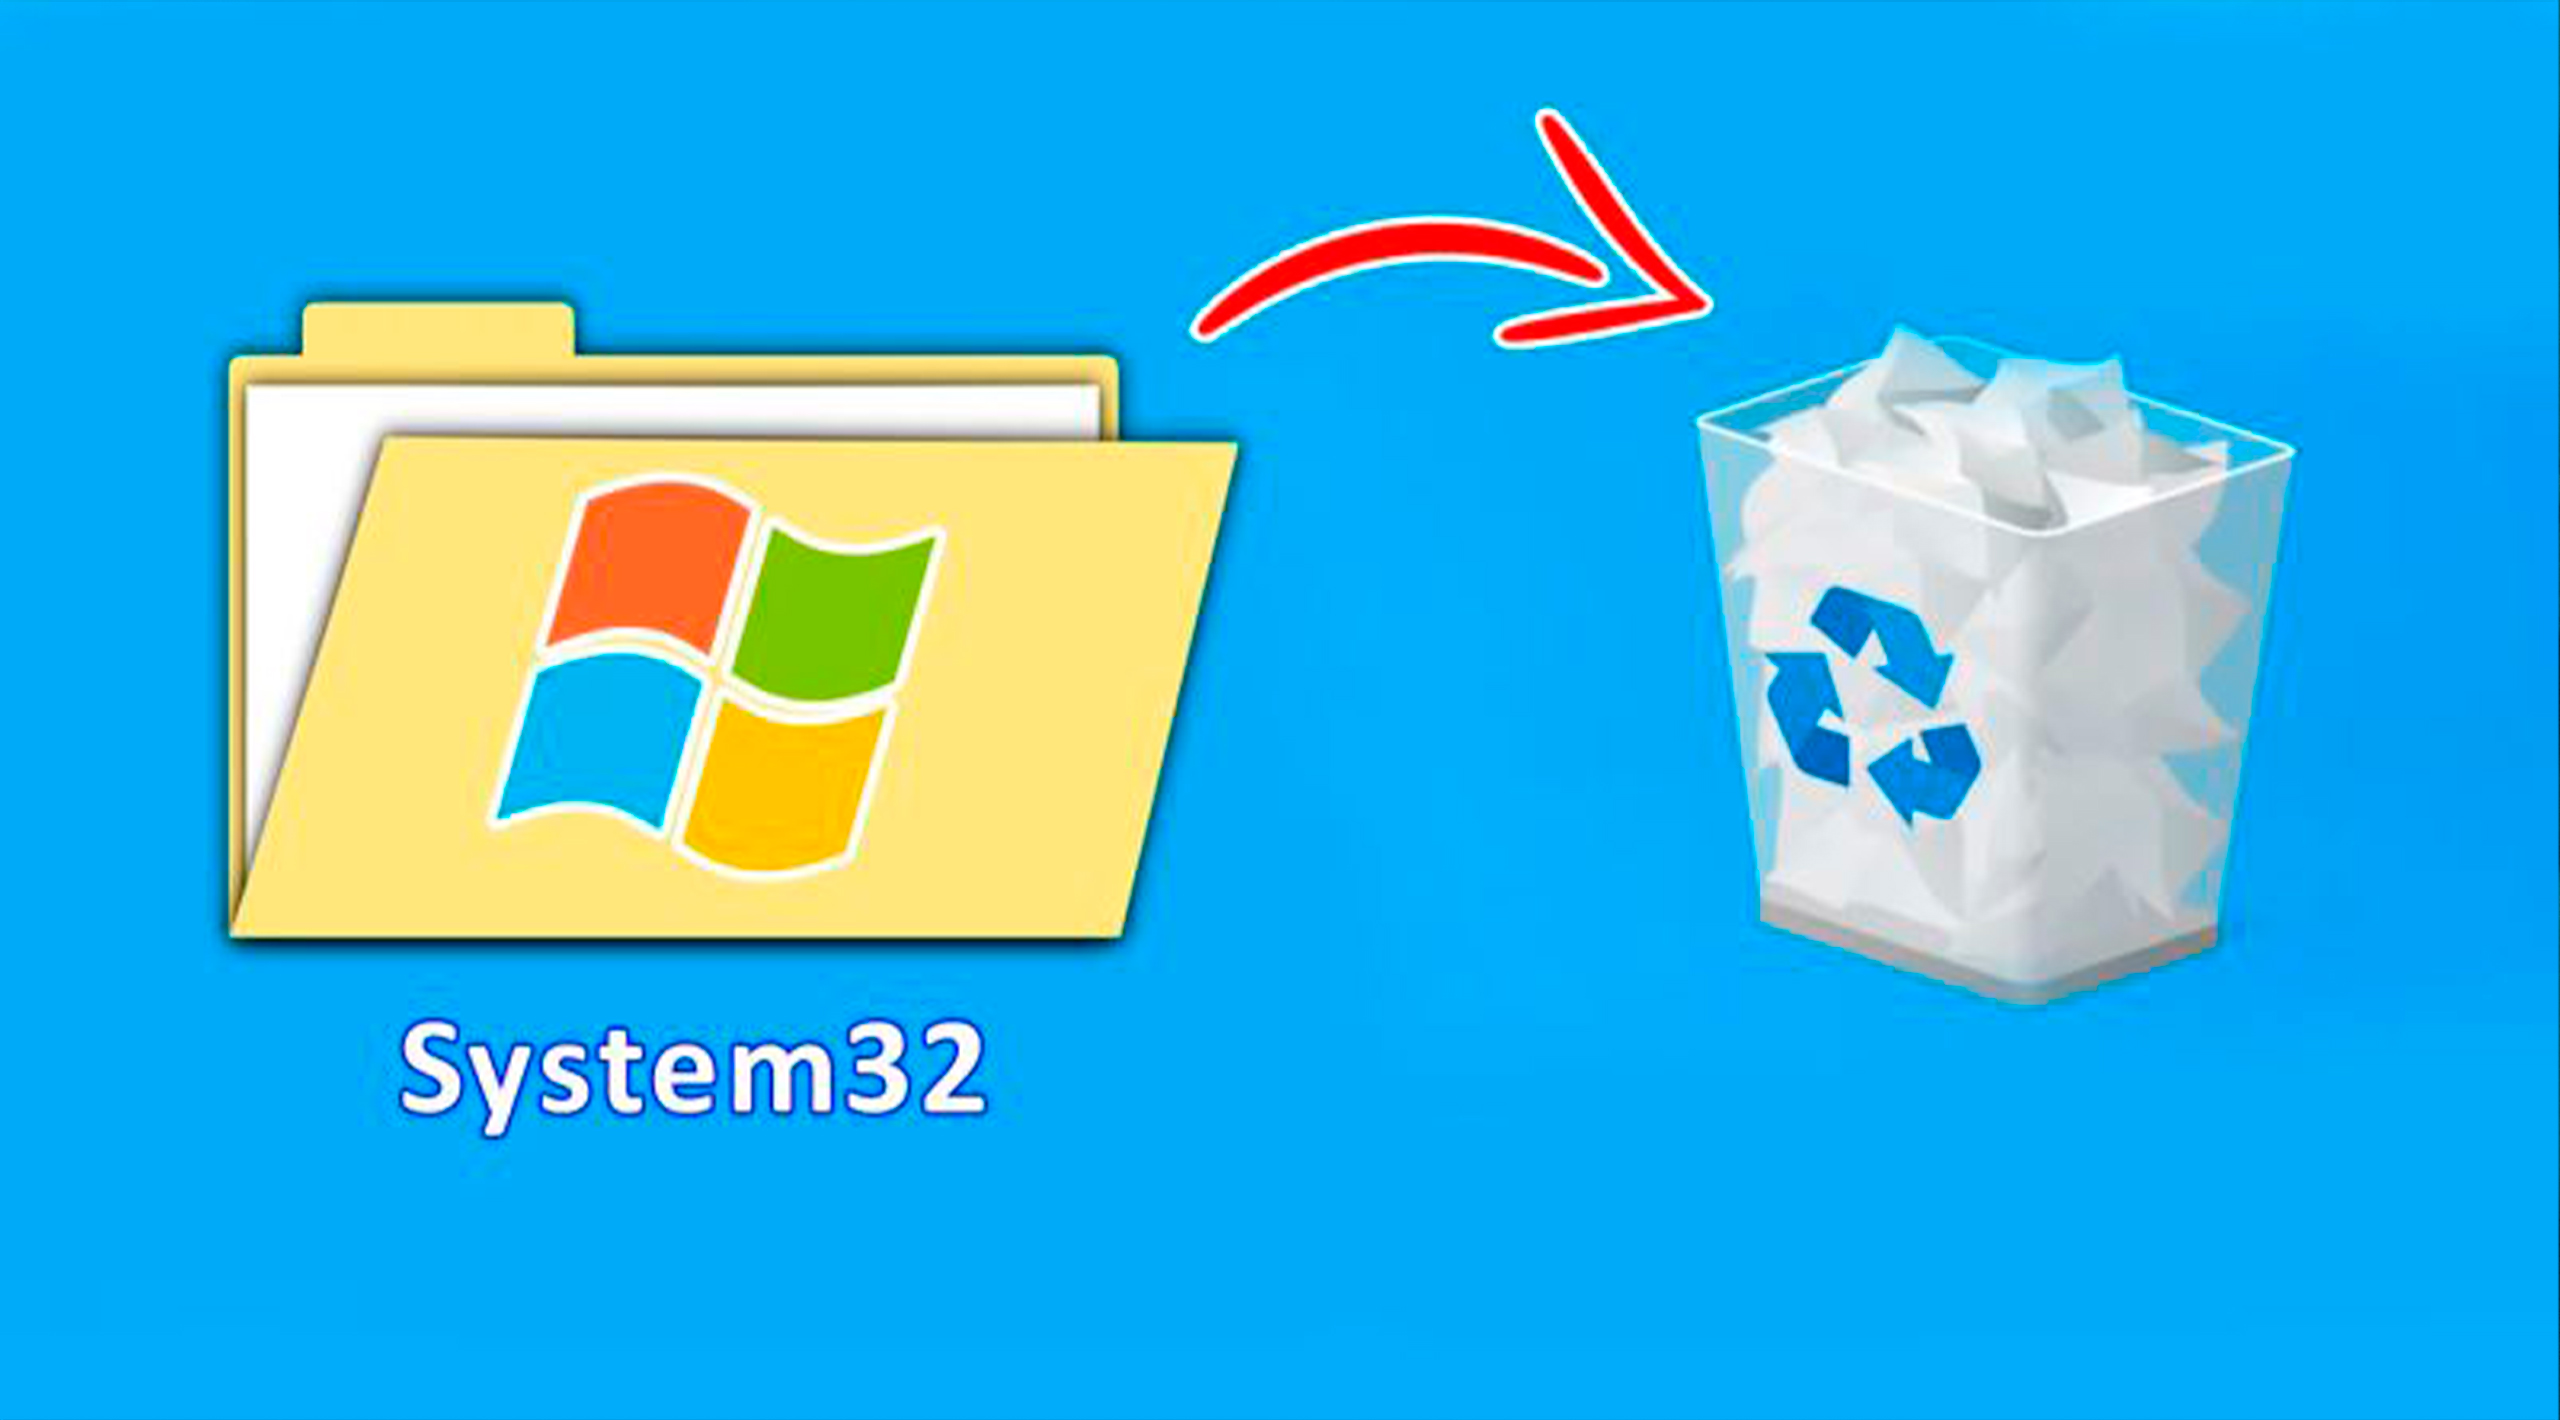 La importancia de la carpeta System32 en el sistema operativo Windows